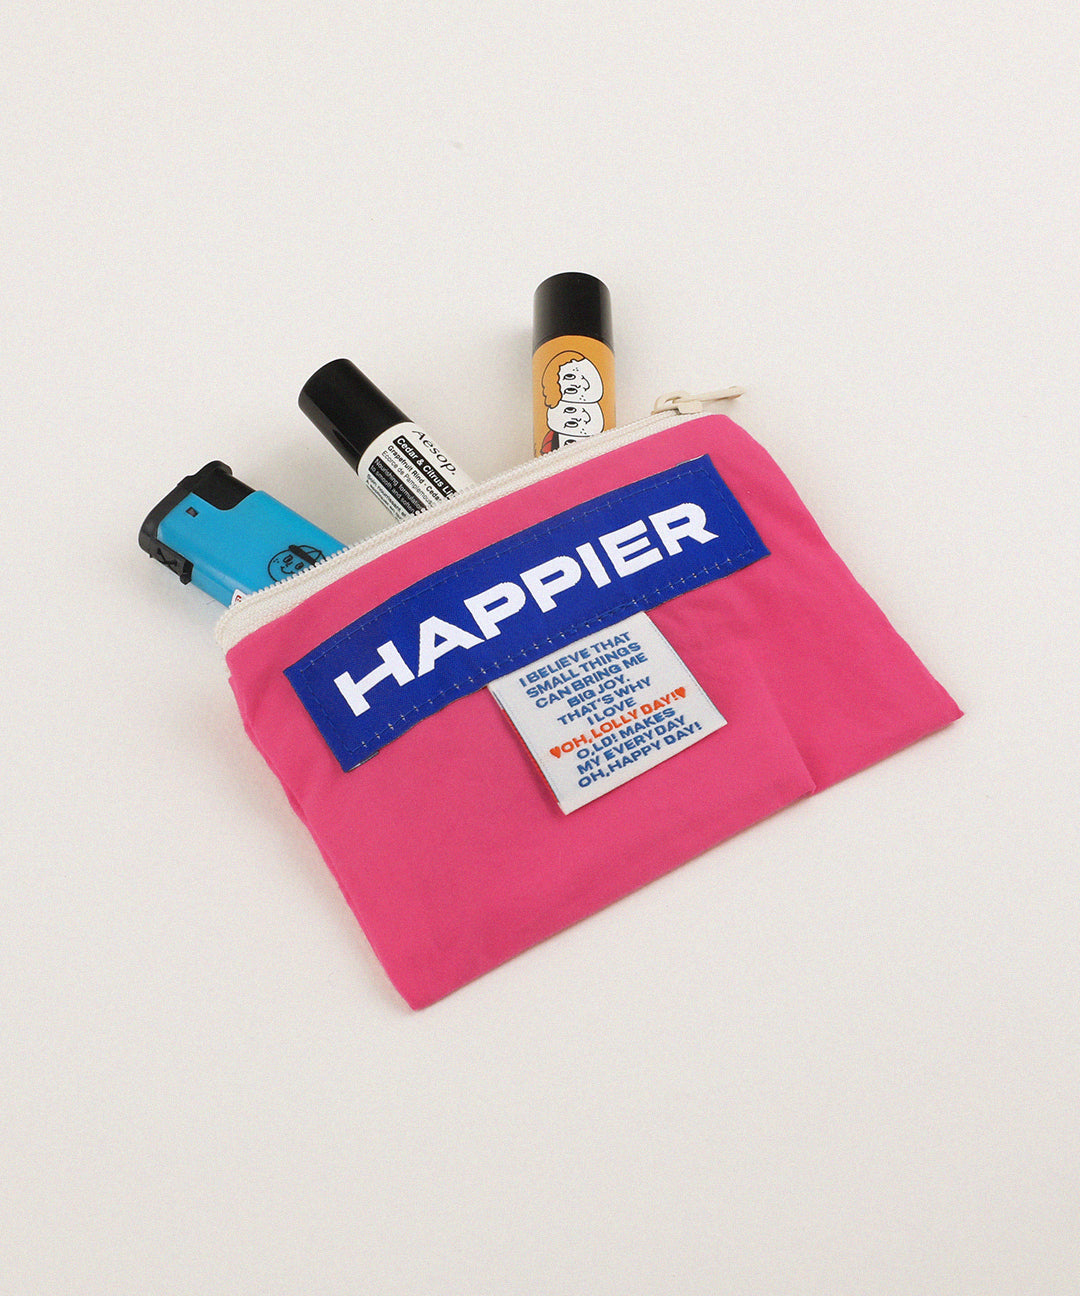 [Pouch] Happier label pouch_S